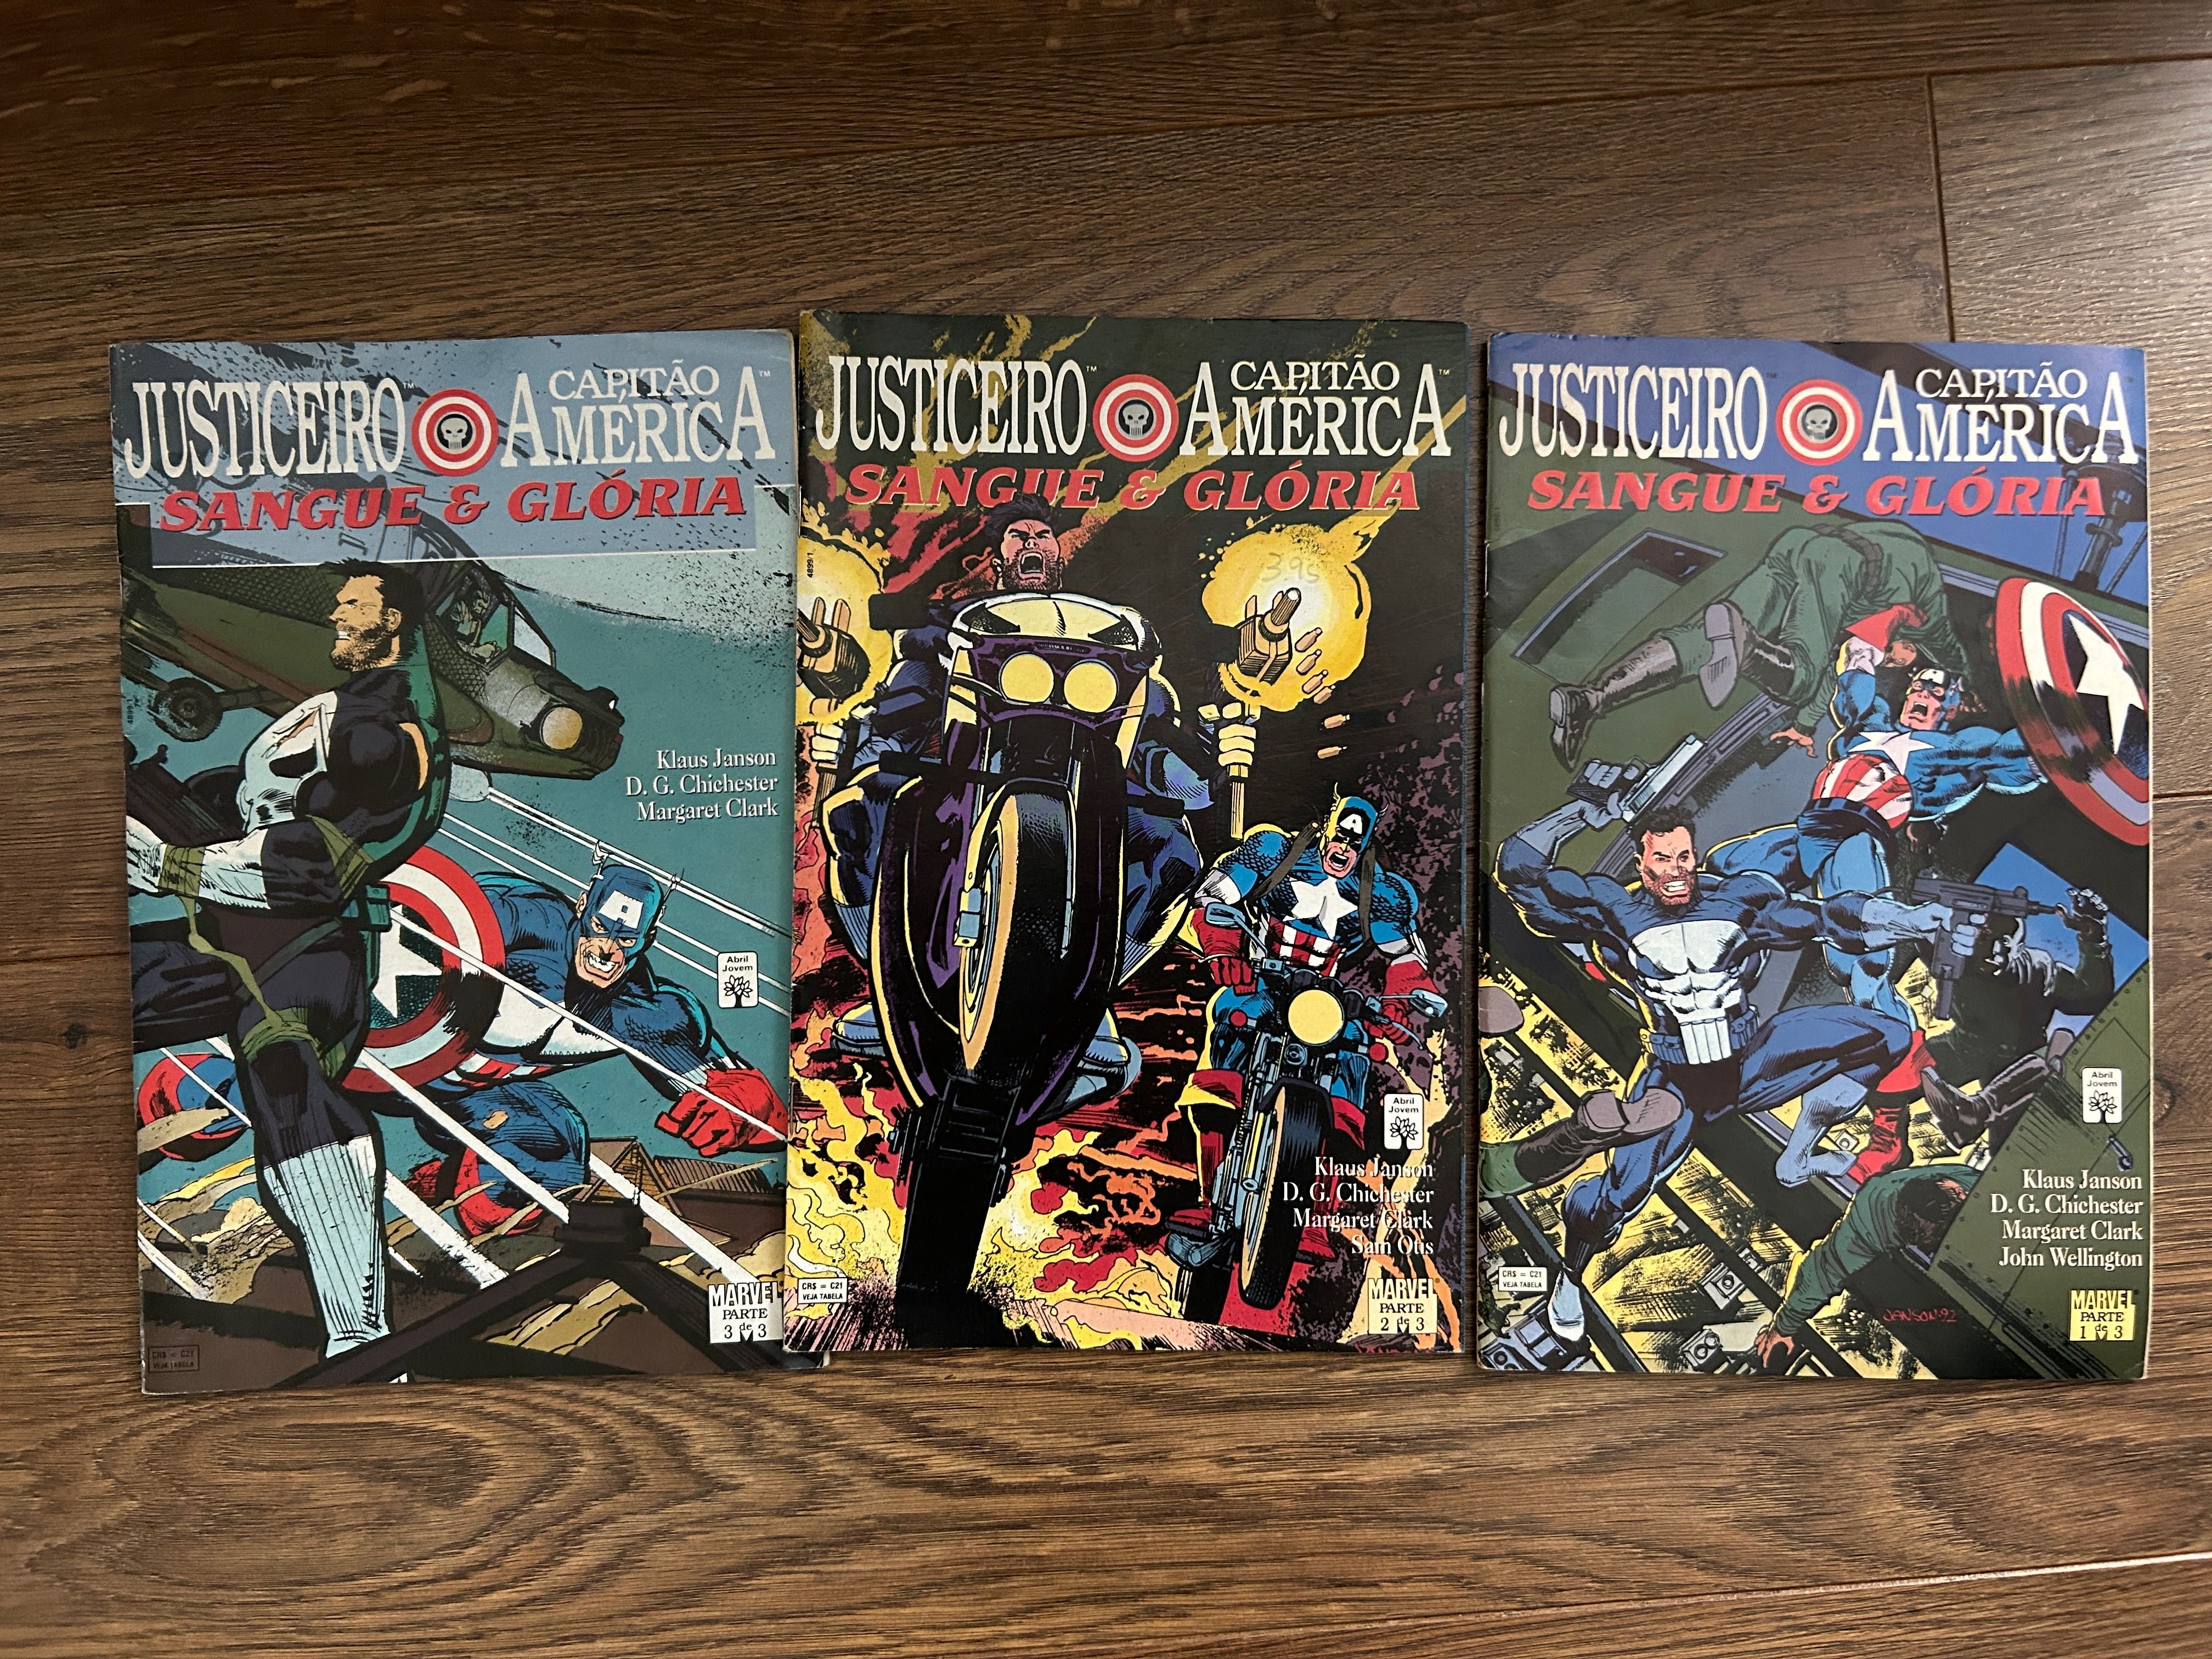 Revistas de banda desenhada/comics - Justiceiro e capitão America